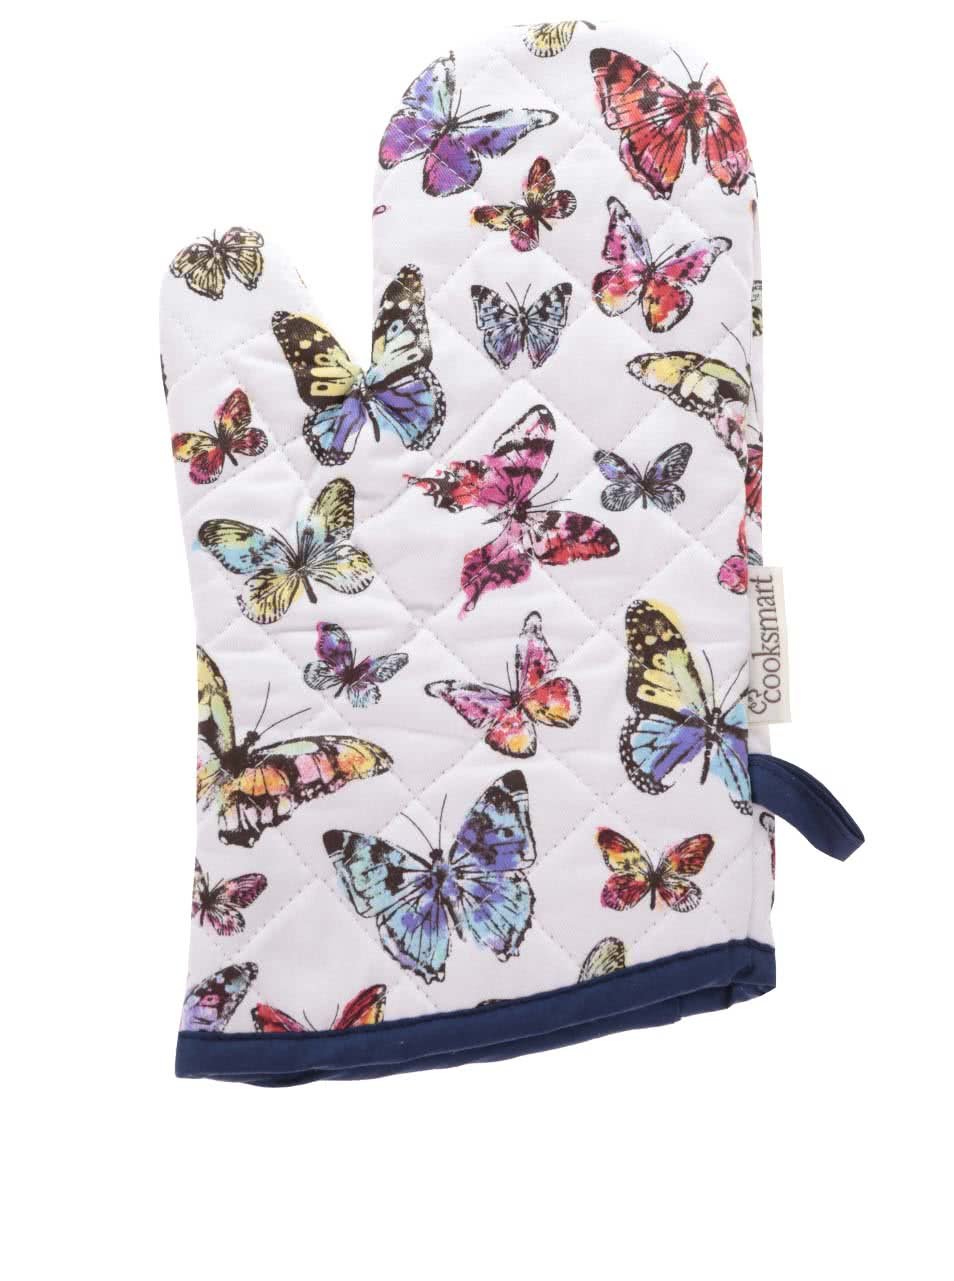 Modro-bílá chňapka s motivy motýlů Cooksmart Butterfly